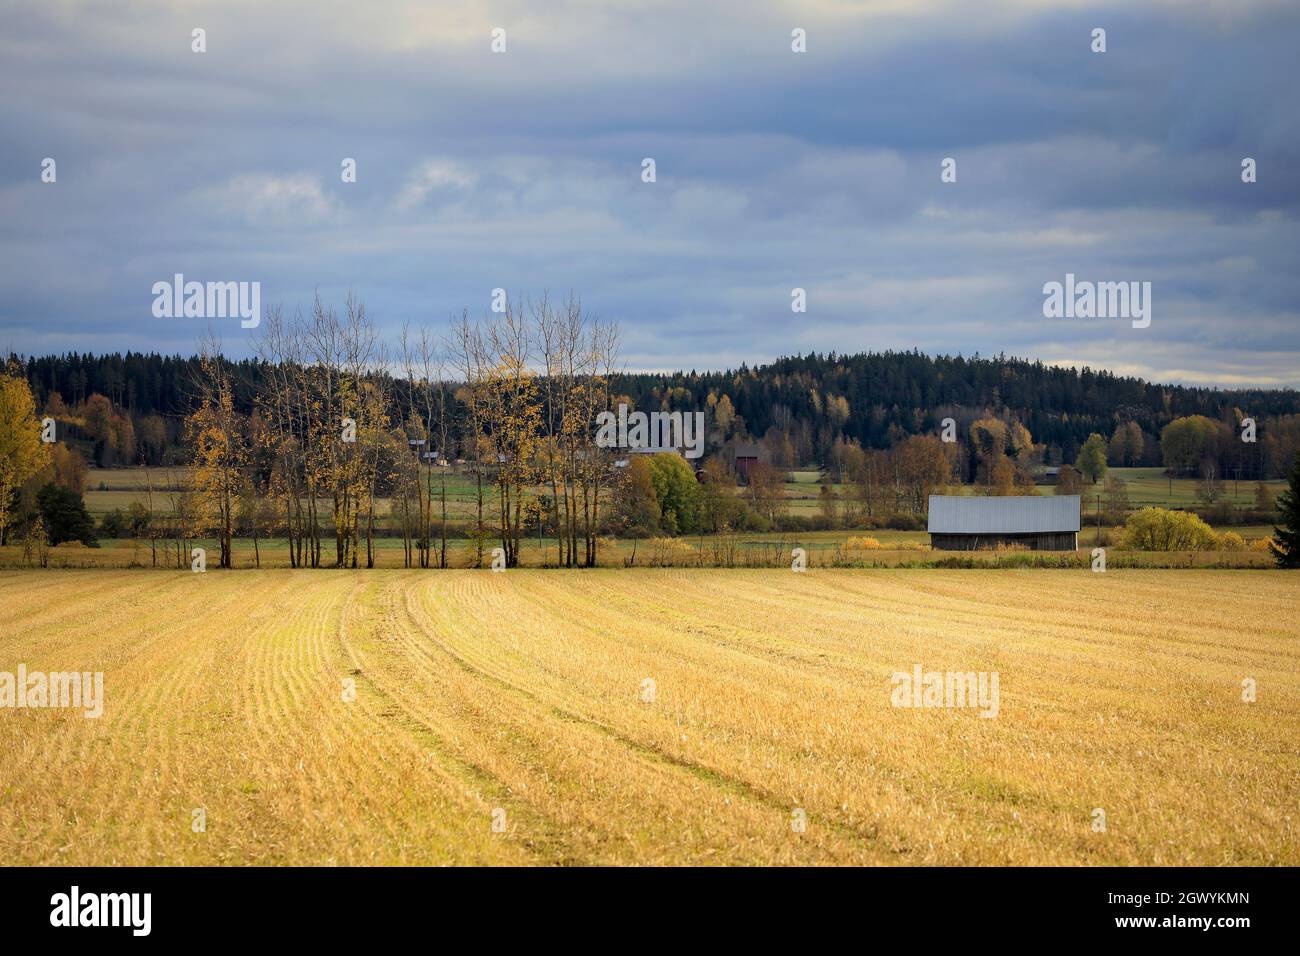 Nuageux mi-octobre après-midi dans la campagne finlandaise avec champs récoltés et tremble et une grange. Tammela, Finlande. Banque D'Images